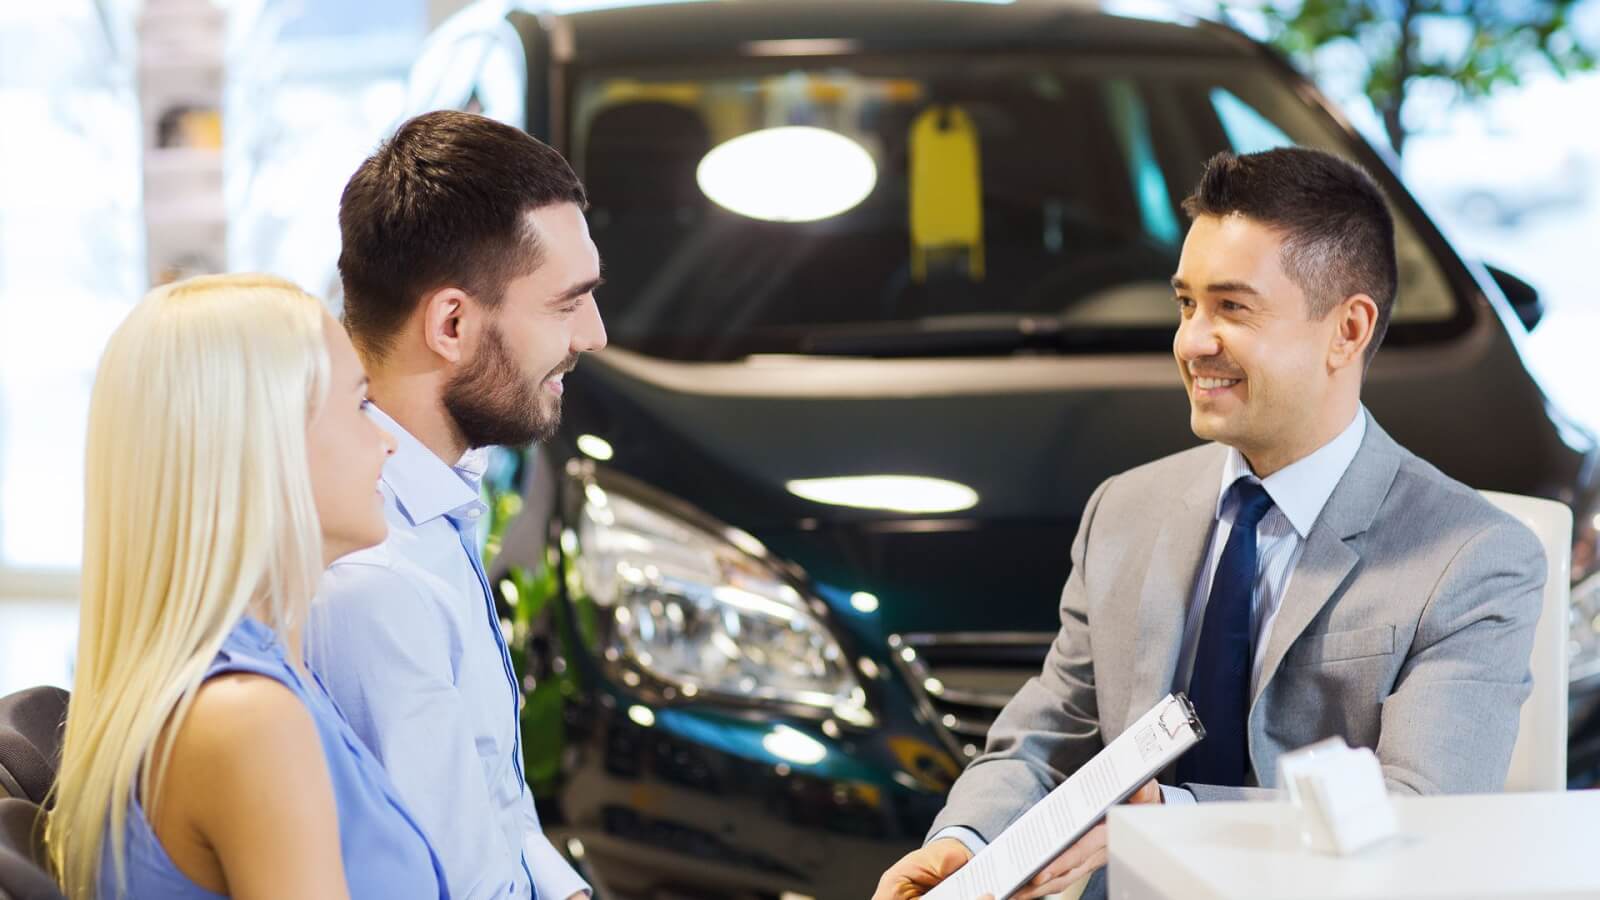 Автокредит или потребительский кредит: что выгоднее для покупки авто